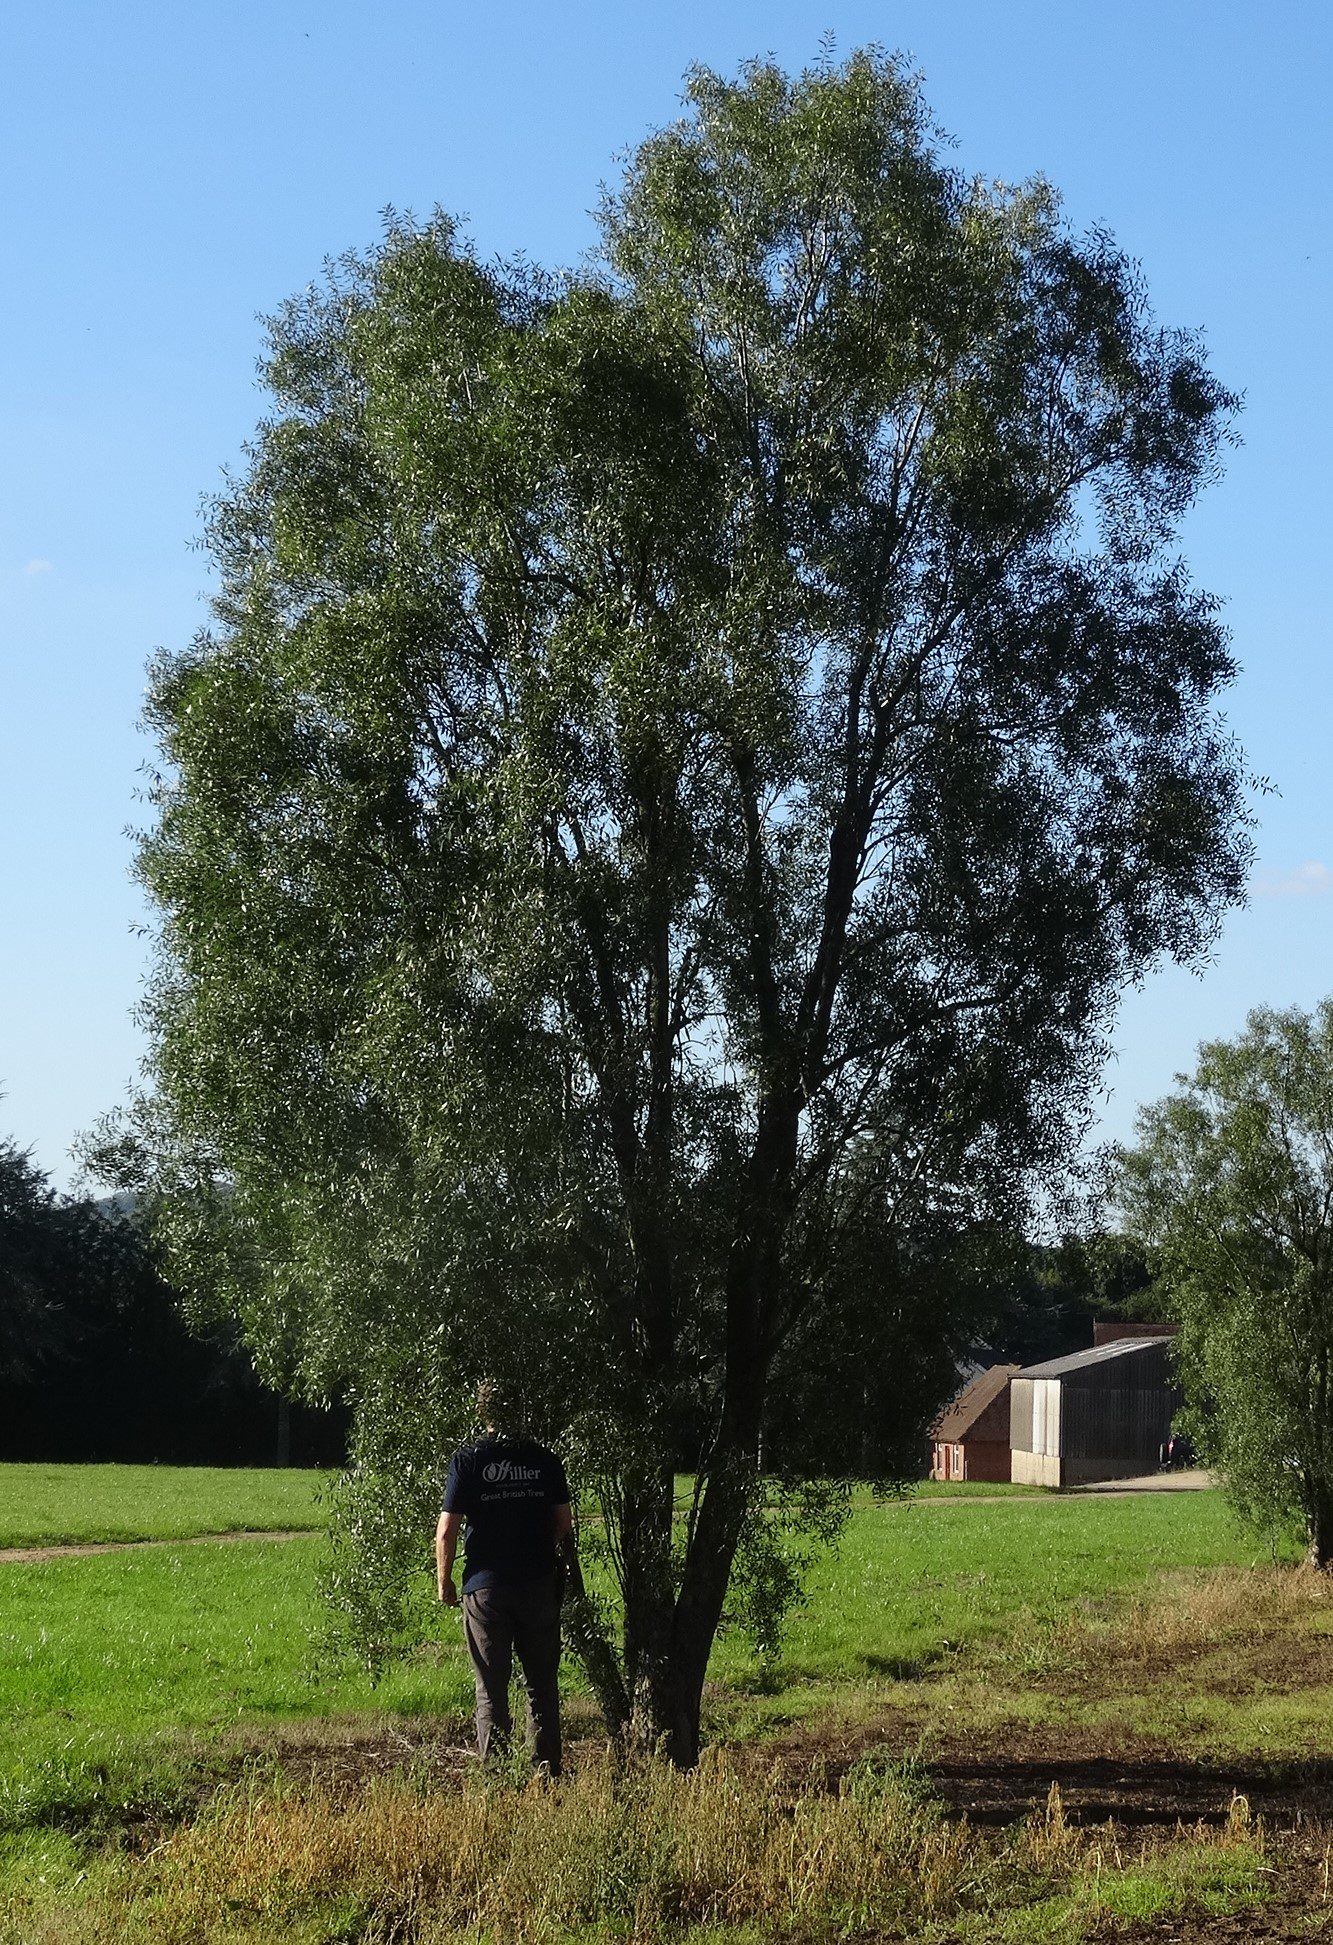 Maytenus boariamayten multi stem tree in field